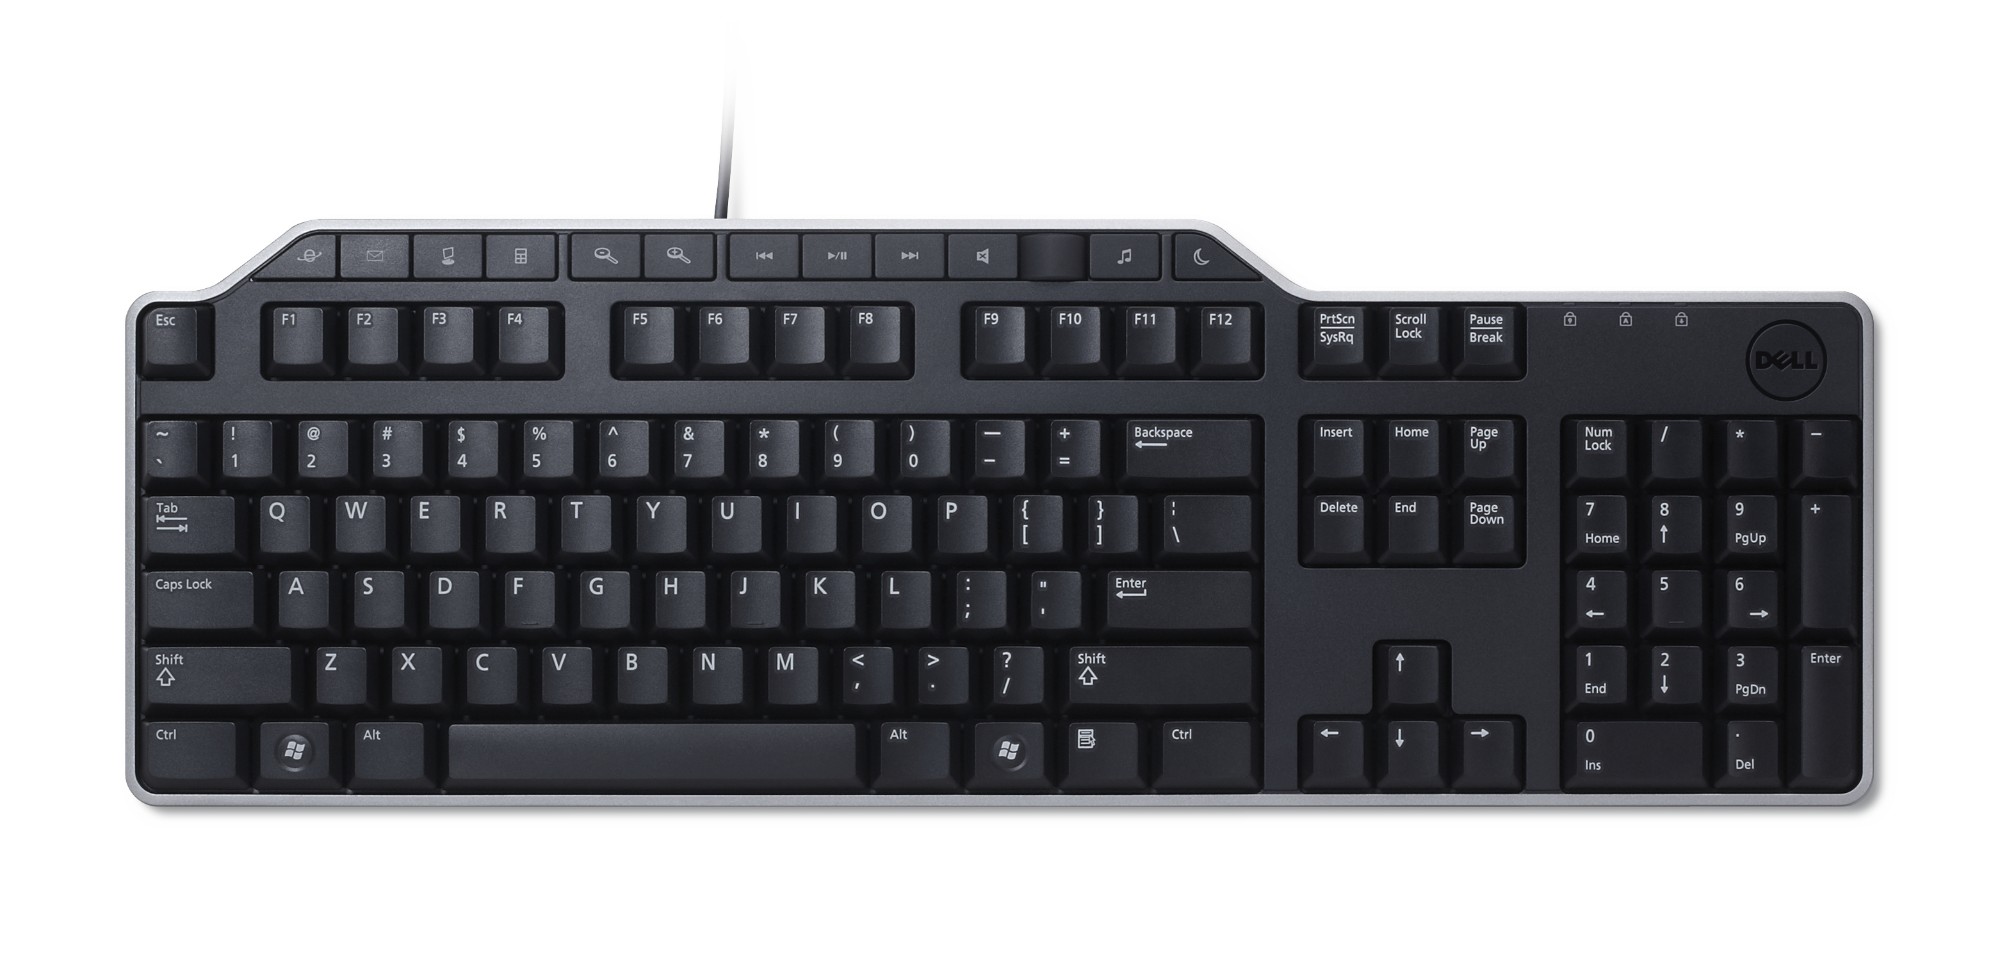 DELL KB522 keyboard USB QWERTY English Black